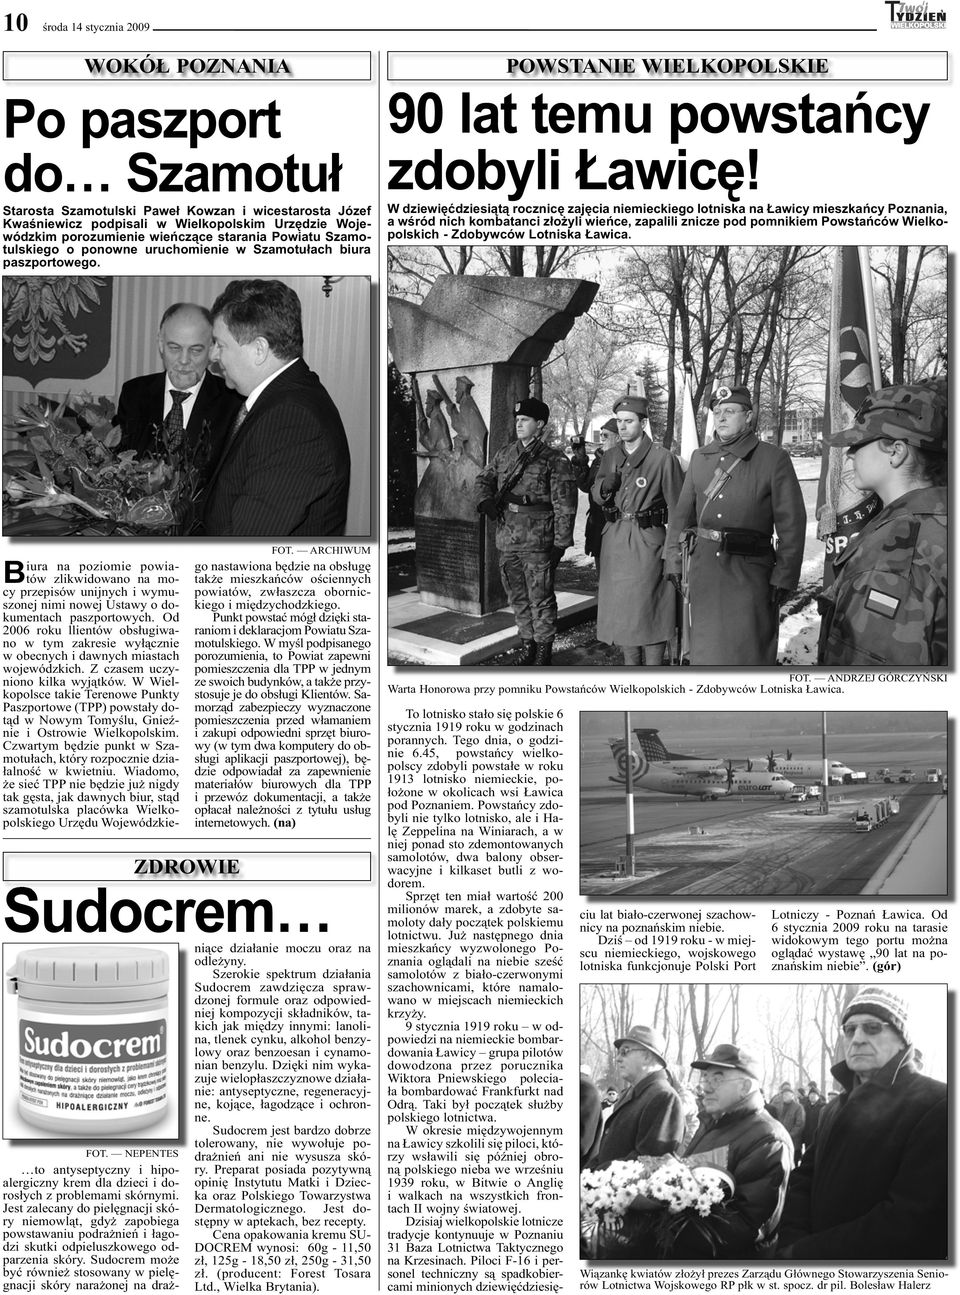 W dziewięćdziesiątą rocznicę zajęcia niemieckiego lotniska na Ławicy mieszkańcy Poznania, a wśród nich kombatanci złożyli wieńce, zapalili znicze pod pomnikiem Powstańców Wielkopolskich - Zdobywców